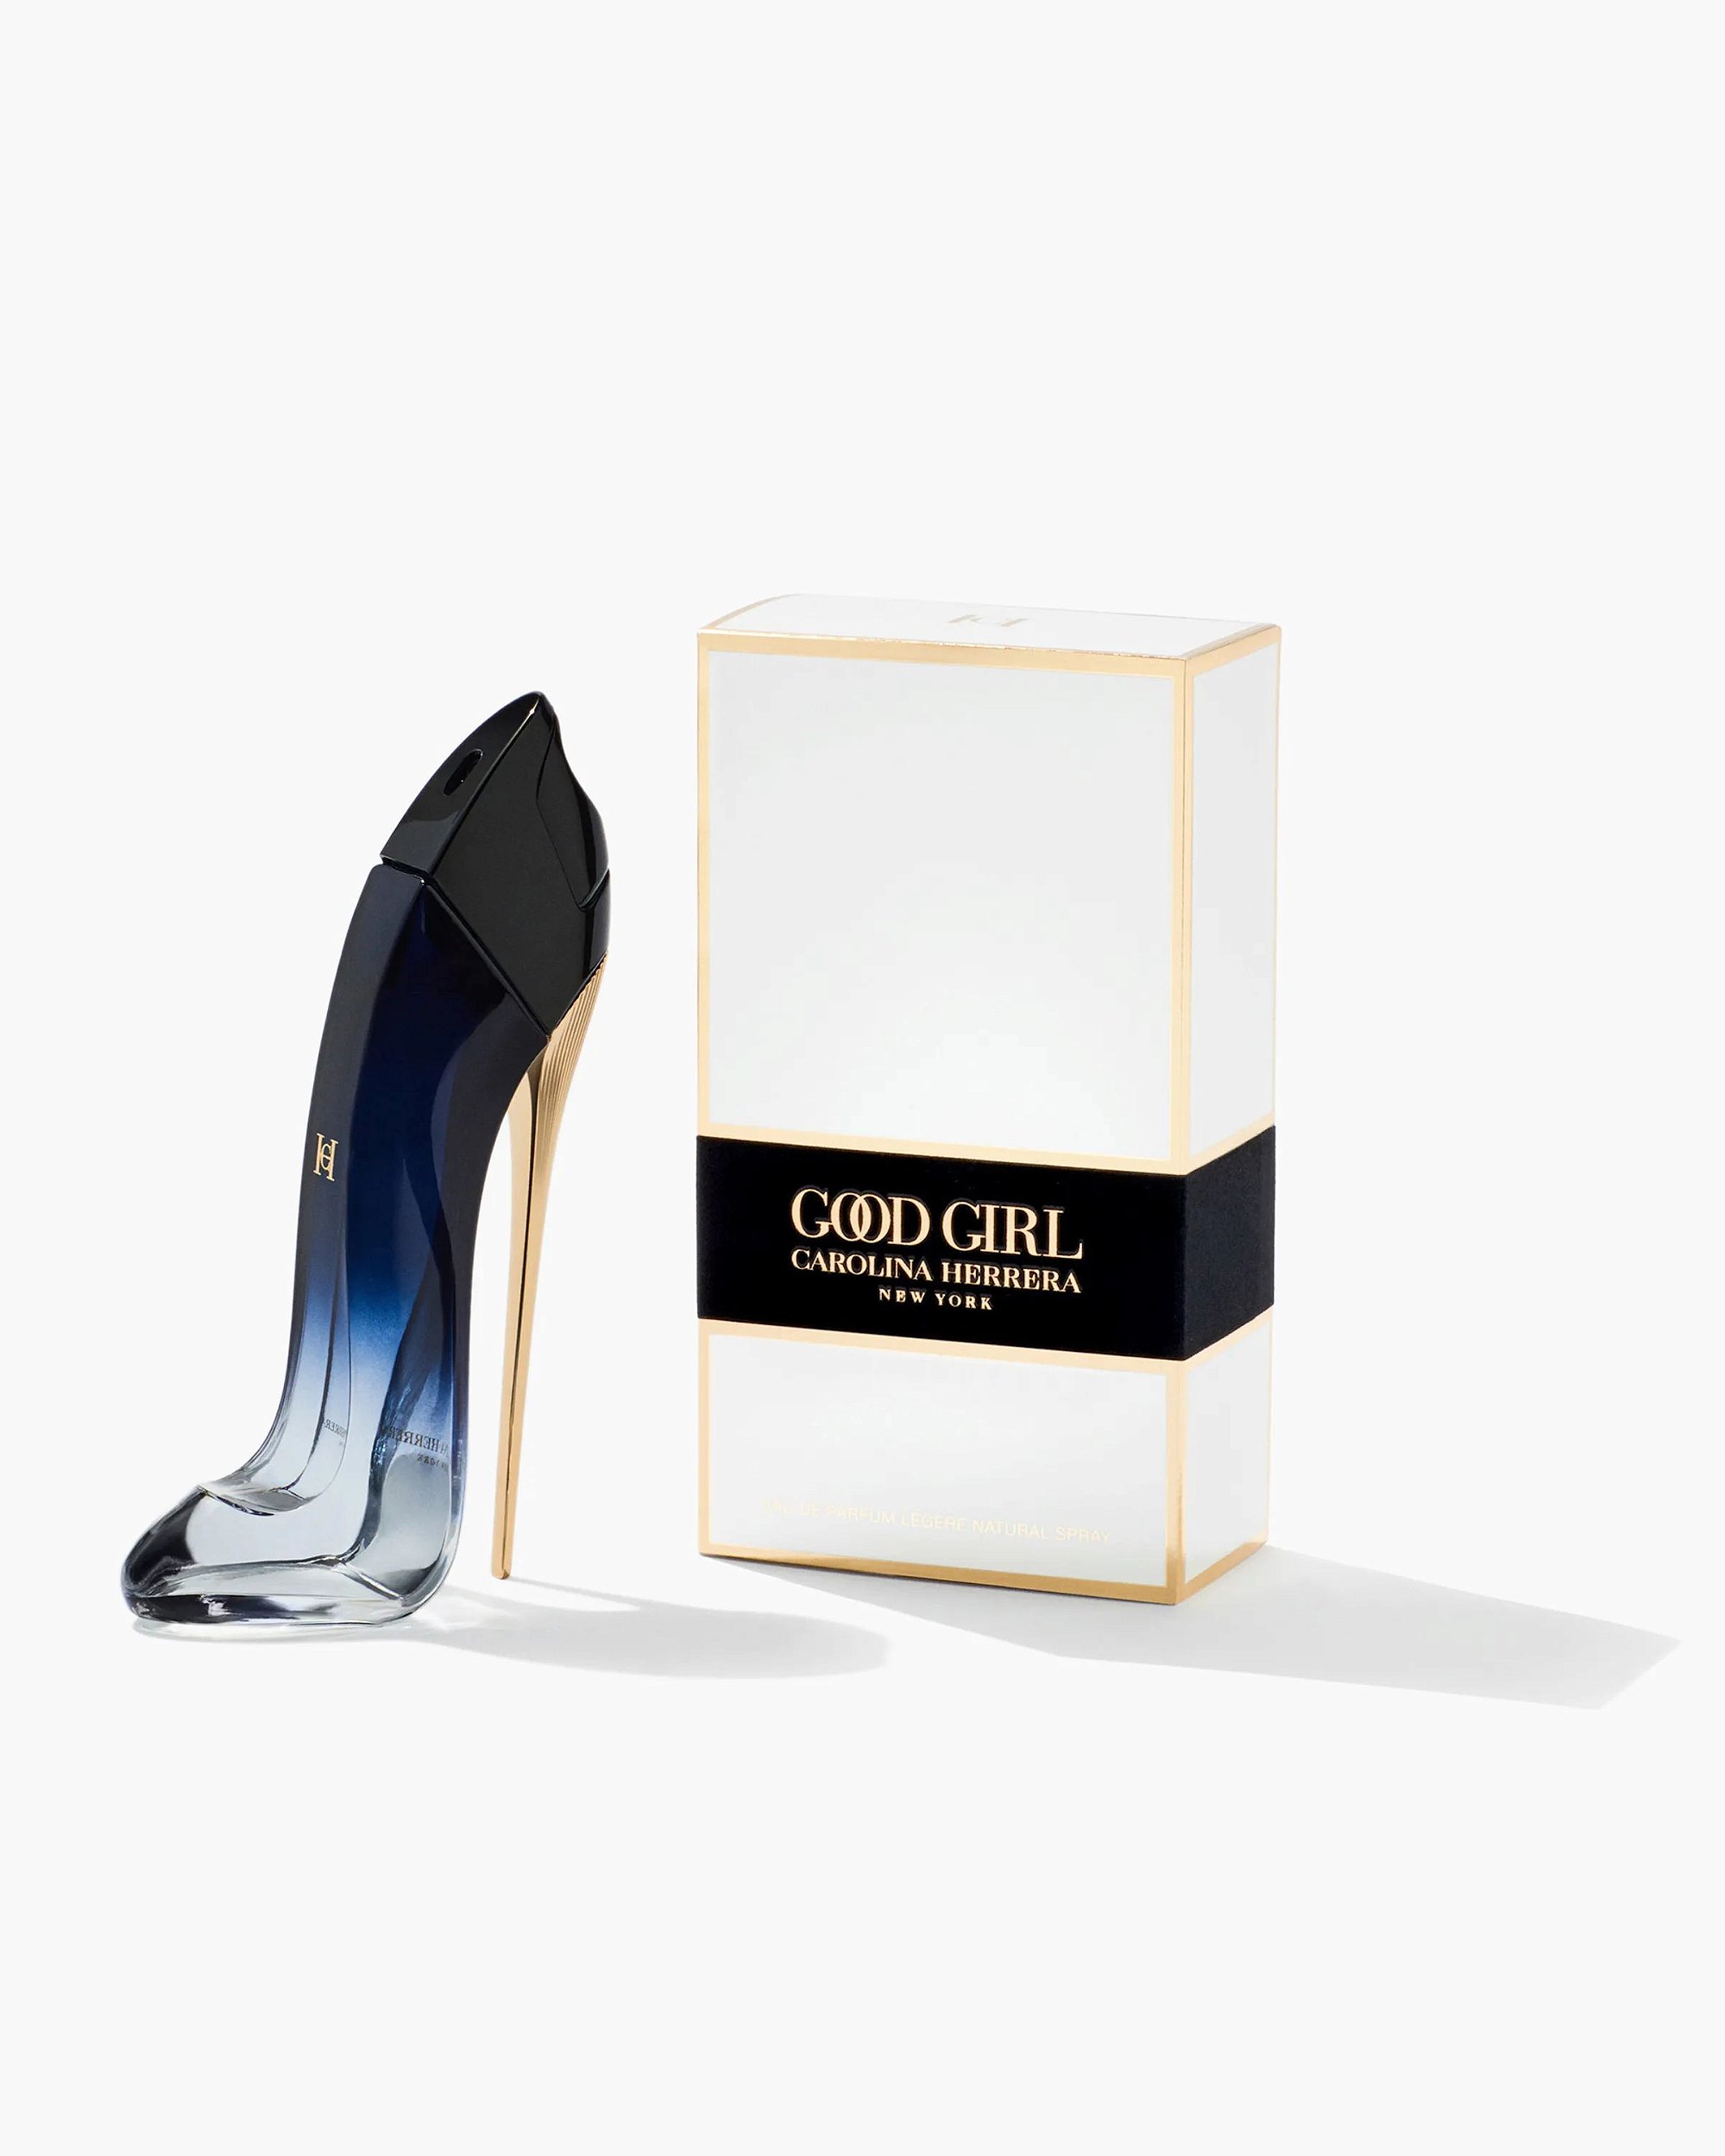 Comprar Good Girl Suprême EDP Carolina Herrera - Perfume Feminino -  Fragrance Box - Perfumes Importados Originais - Até 10x sem Juros